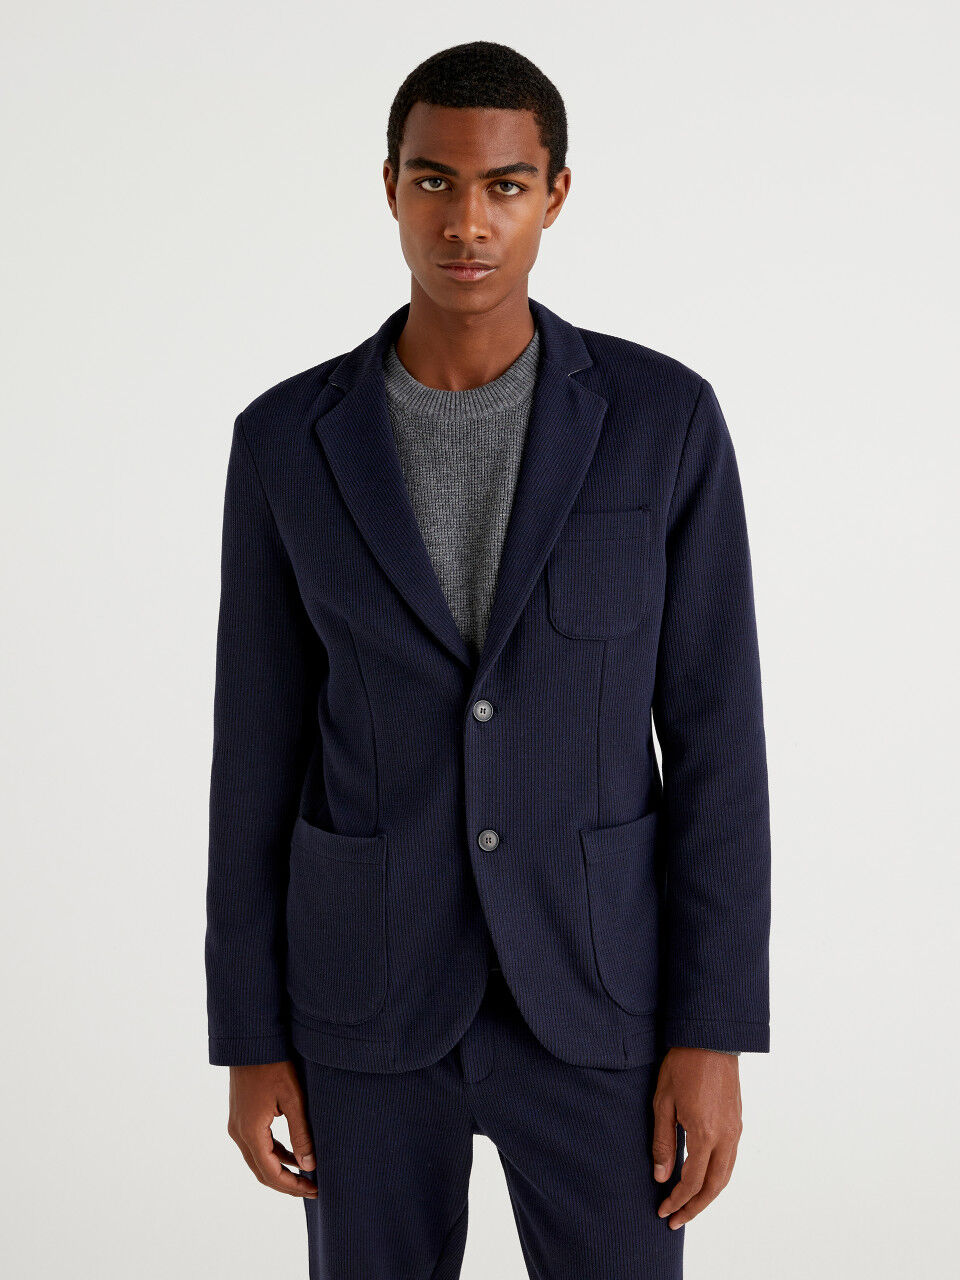 Men's Blazers and Jackets | Shop Men's Blazers Online | Koy Clothing